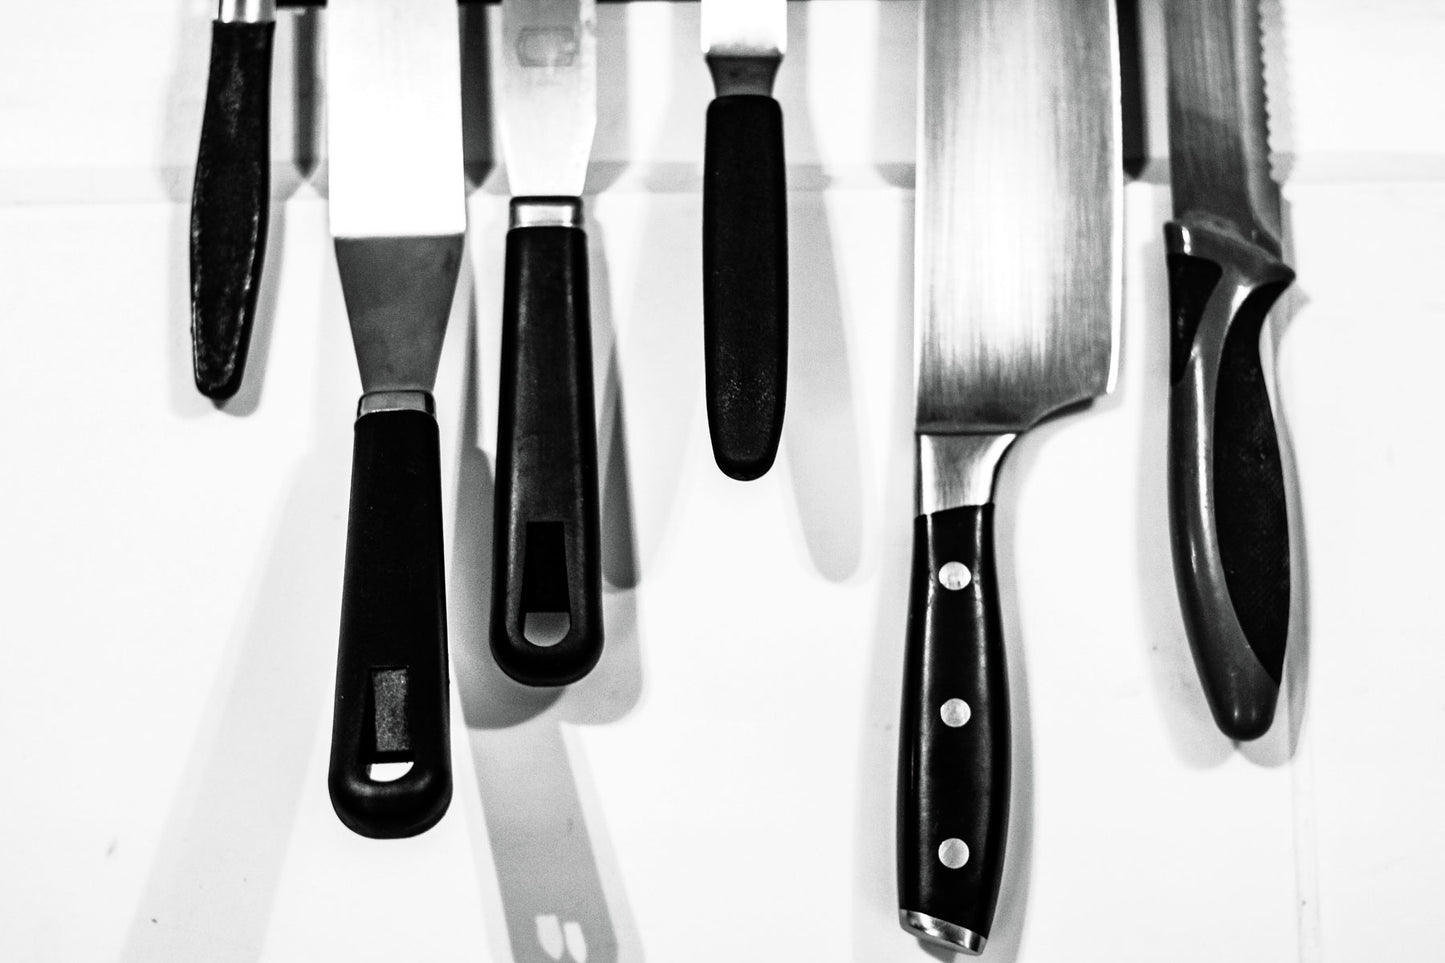 Consejos para pulir los utensilios de cocina